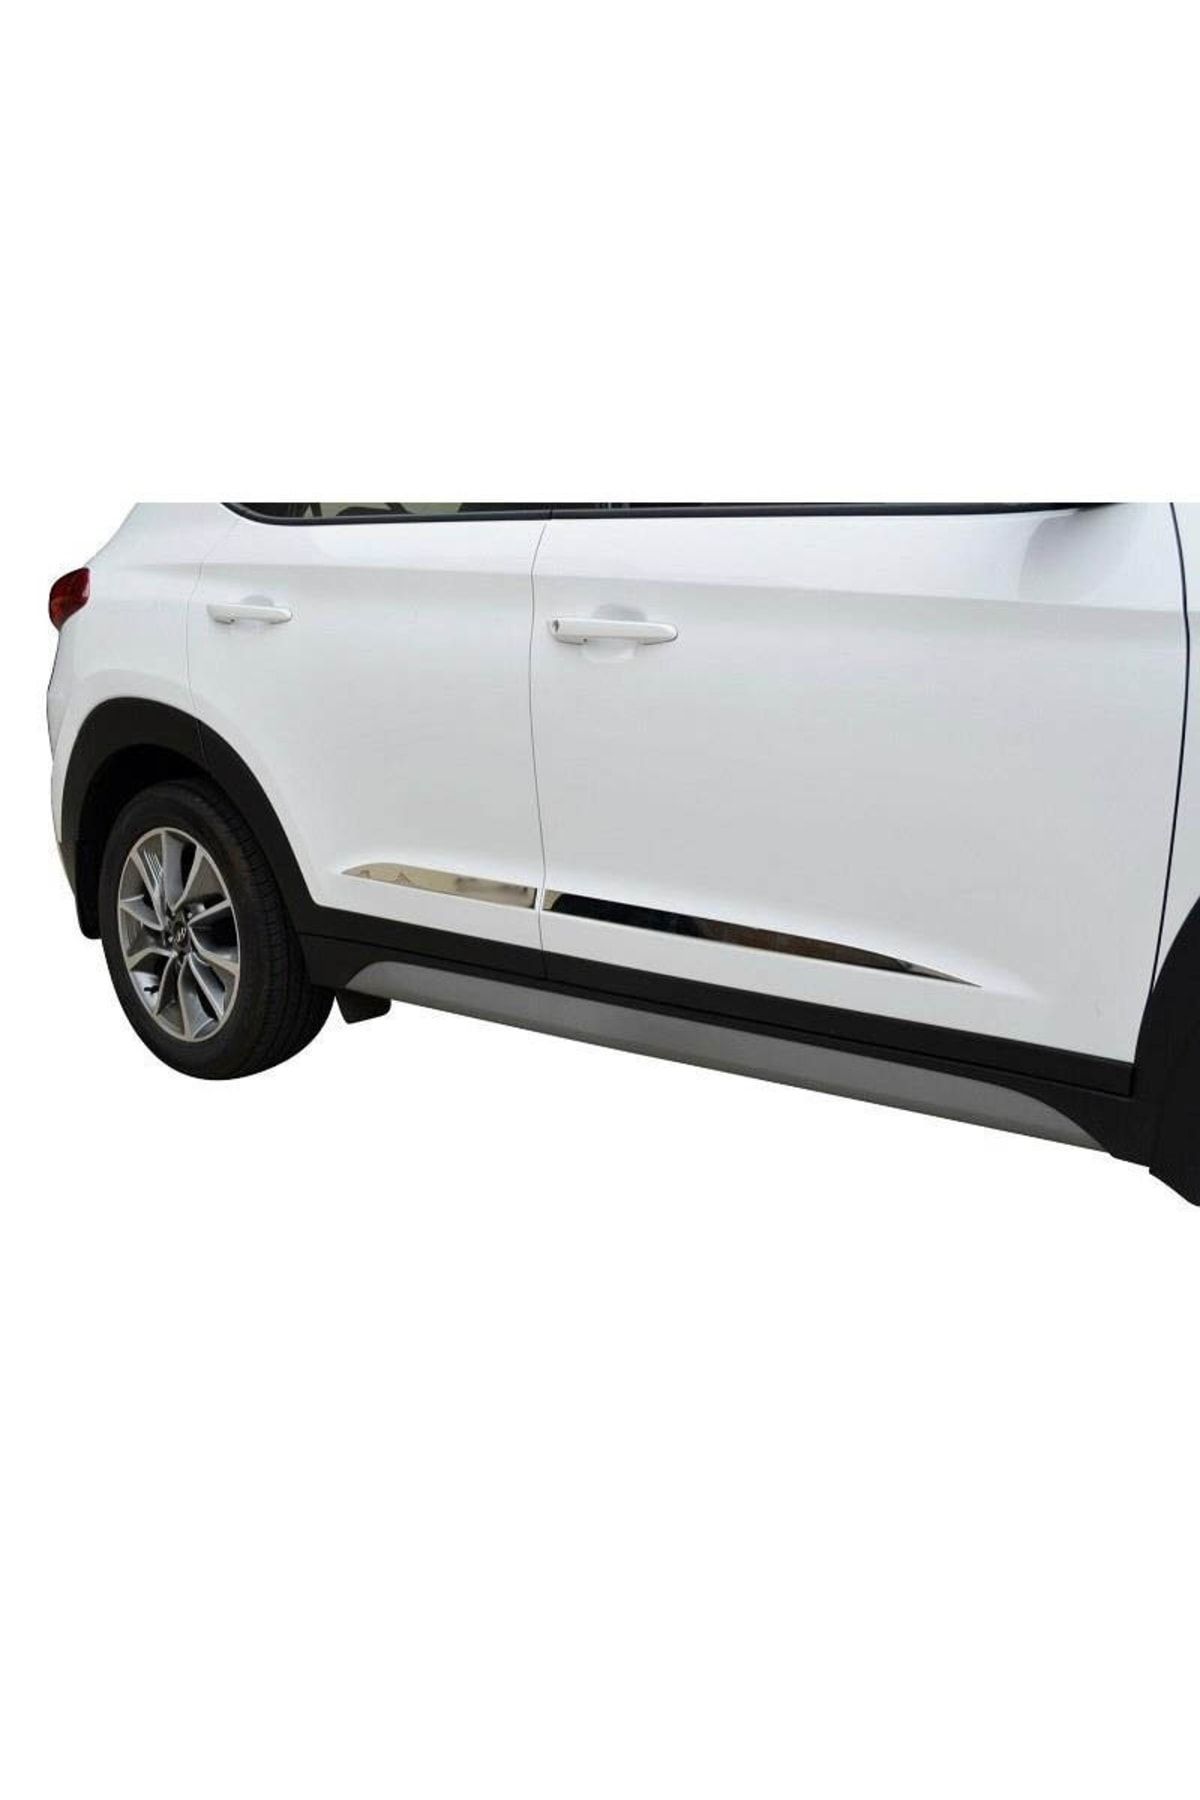 OLED GARAJ Hyundai Tucson İçin Uyumlu  2015-2018 Krom Kapı Çıtası